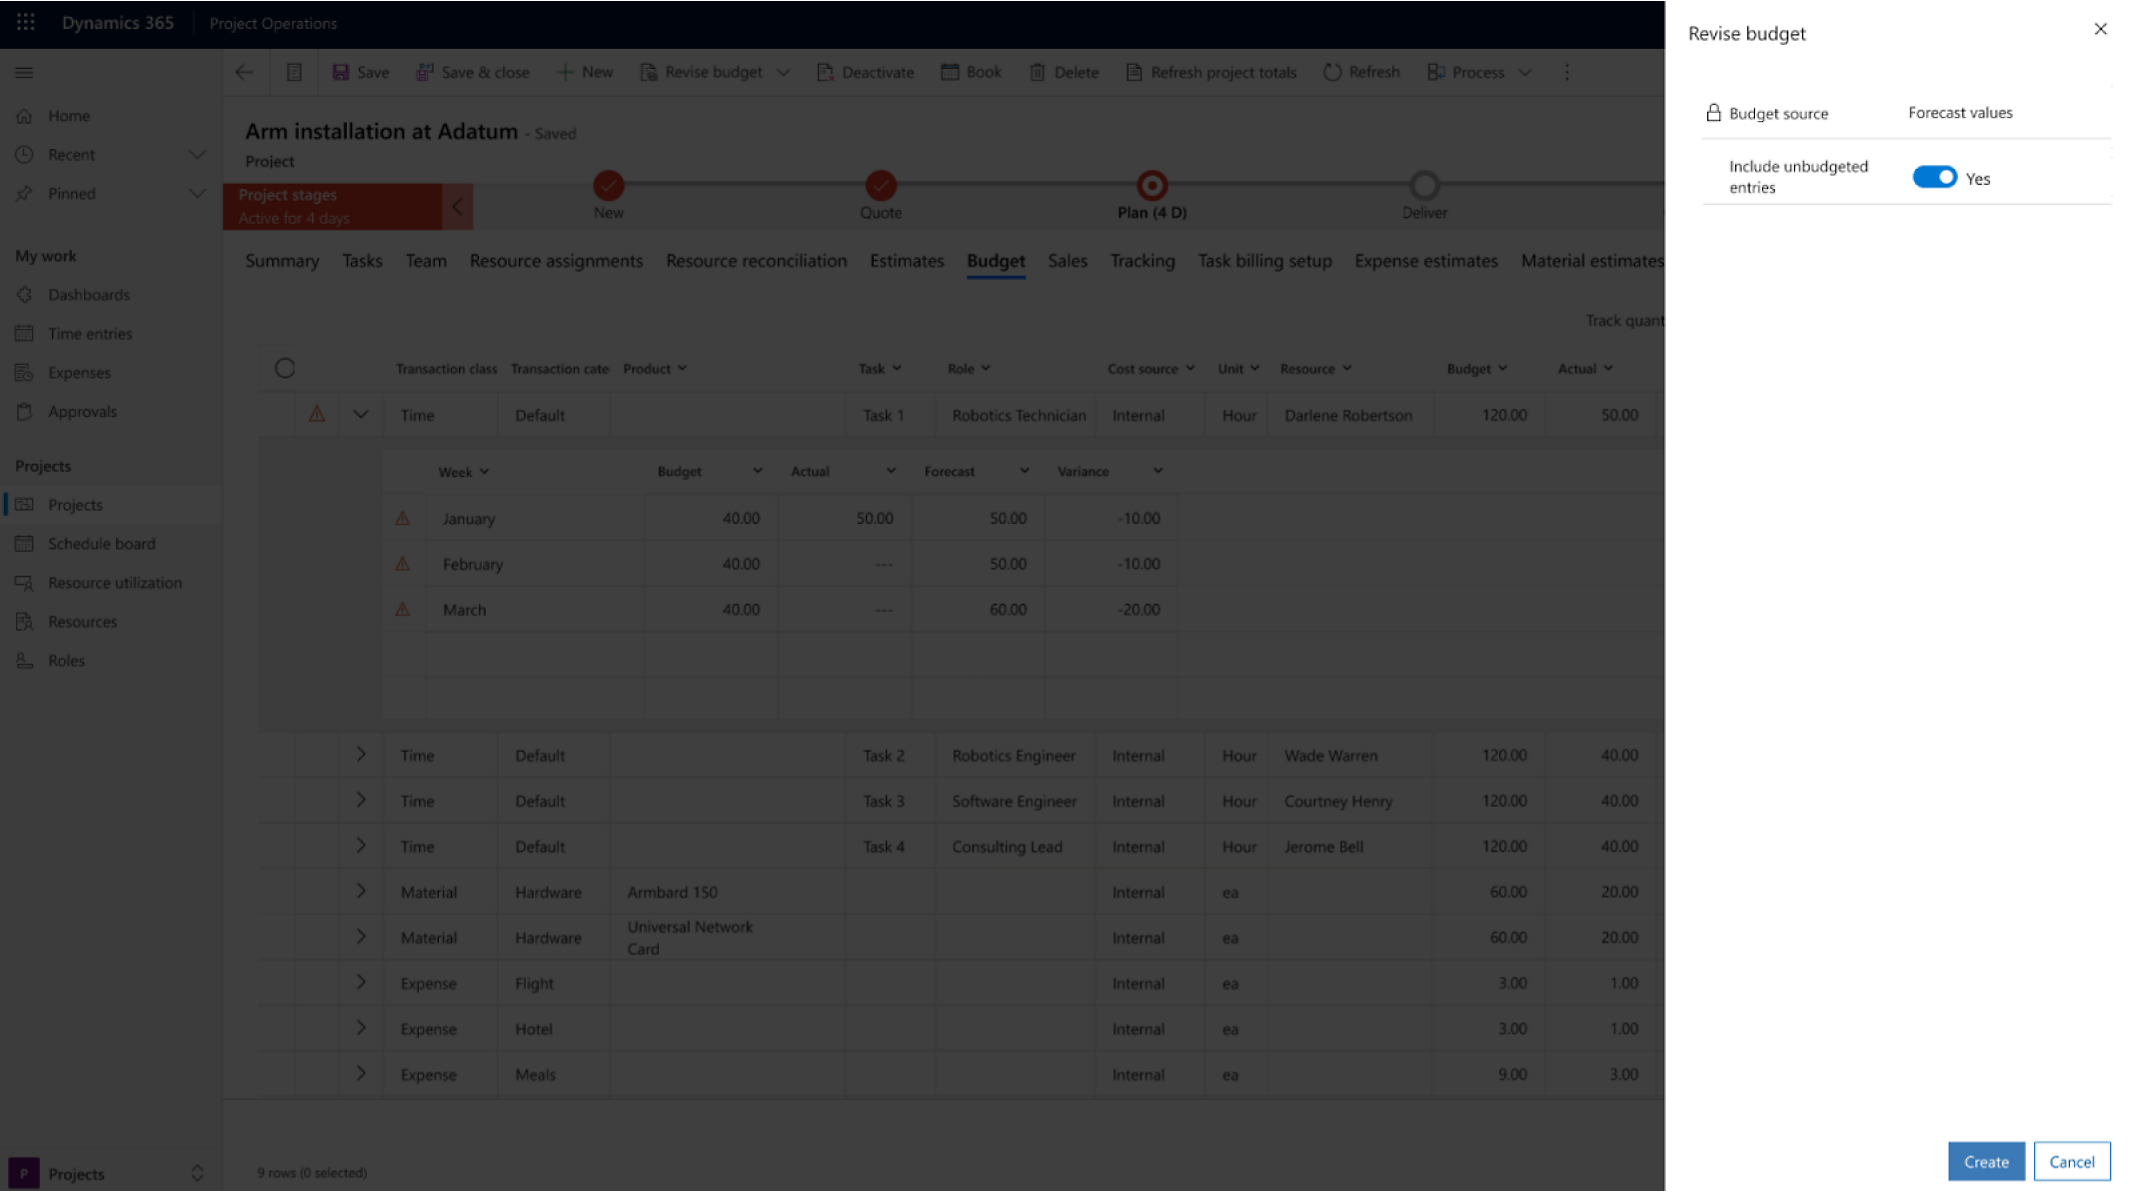 Screenshot di un'interfaccia di revisione del budget in Microsoft Dynamics 365 con particolare attenzione alle operazioni del progetto